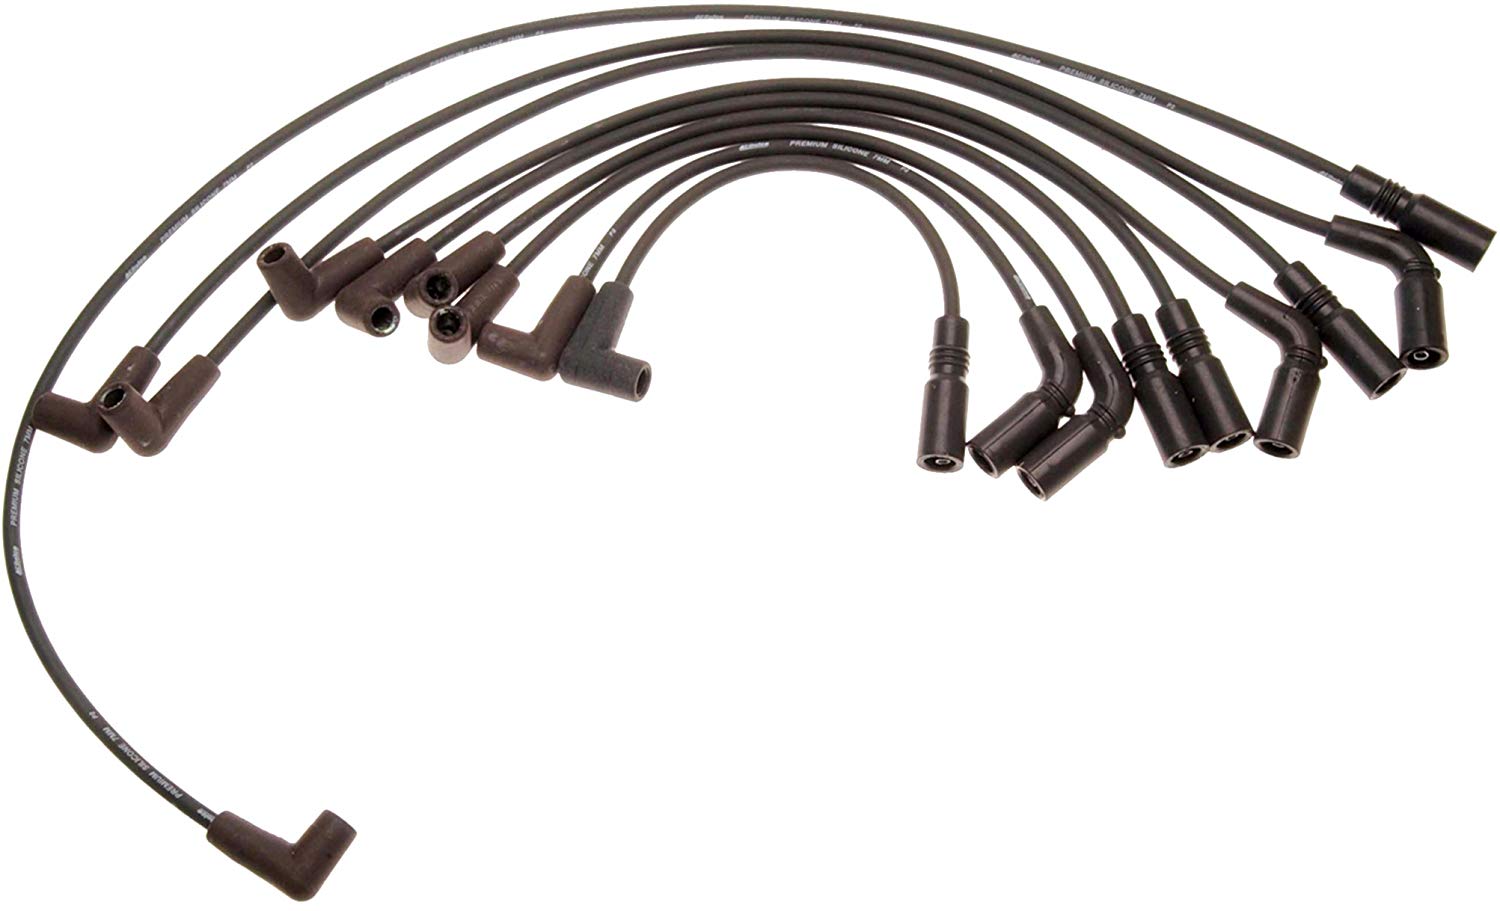 ACDelco 718F GM Original Equipment Spark Plug Wire Set